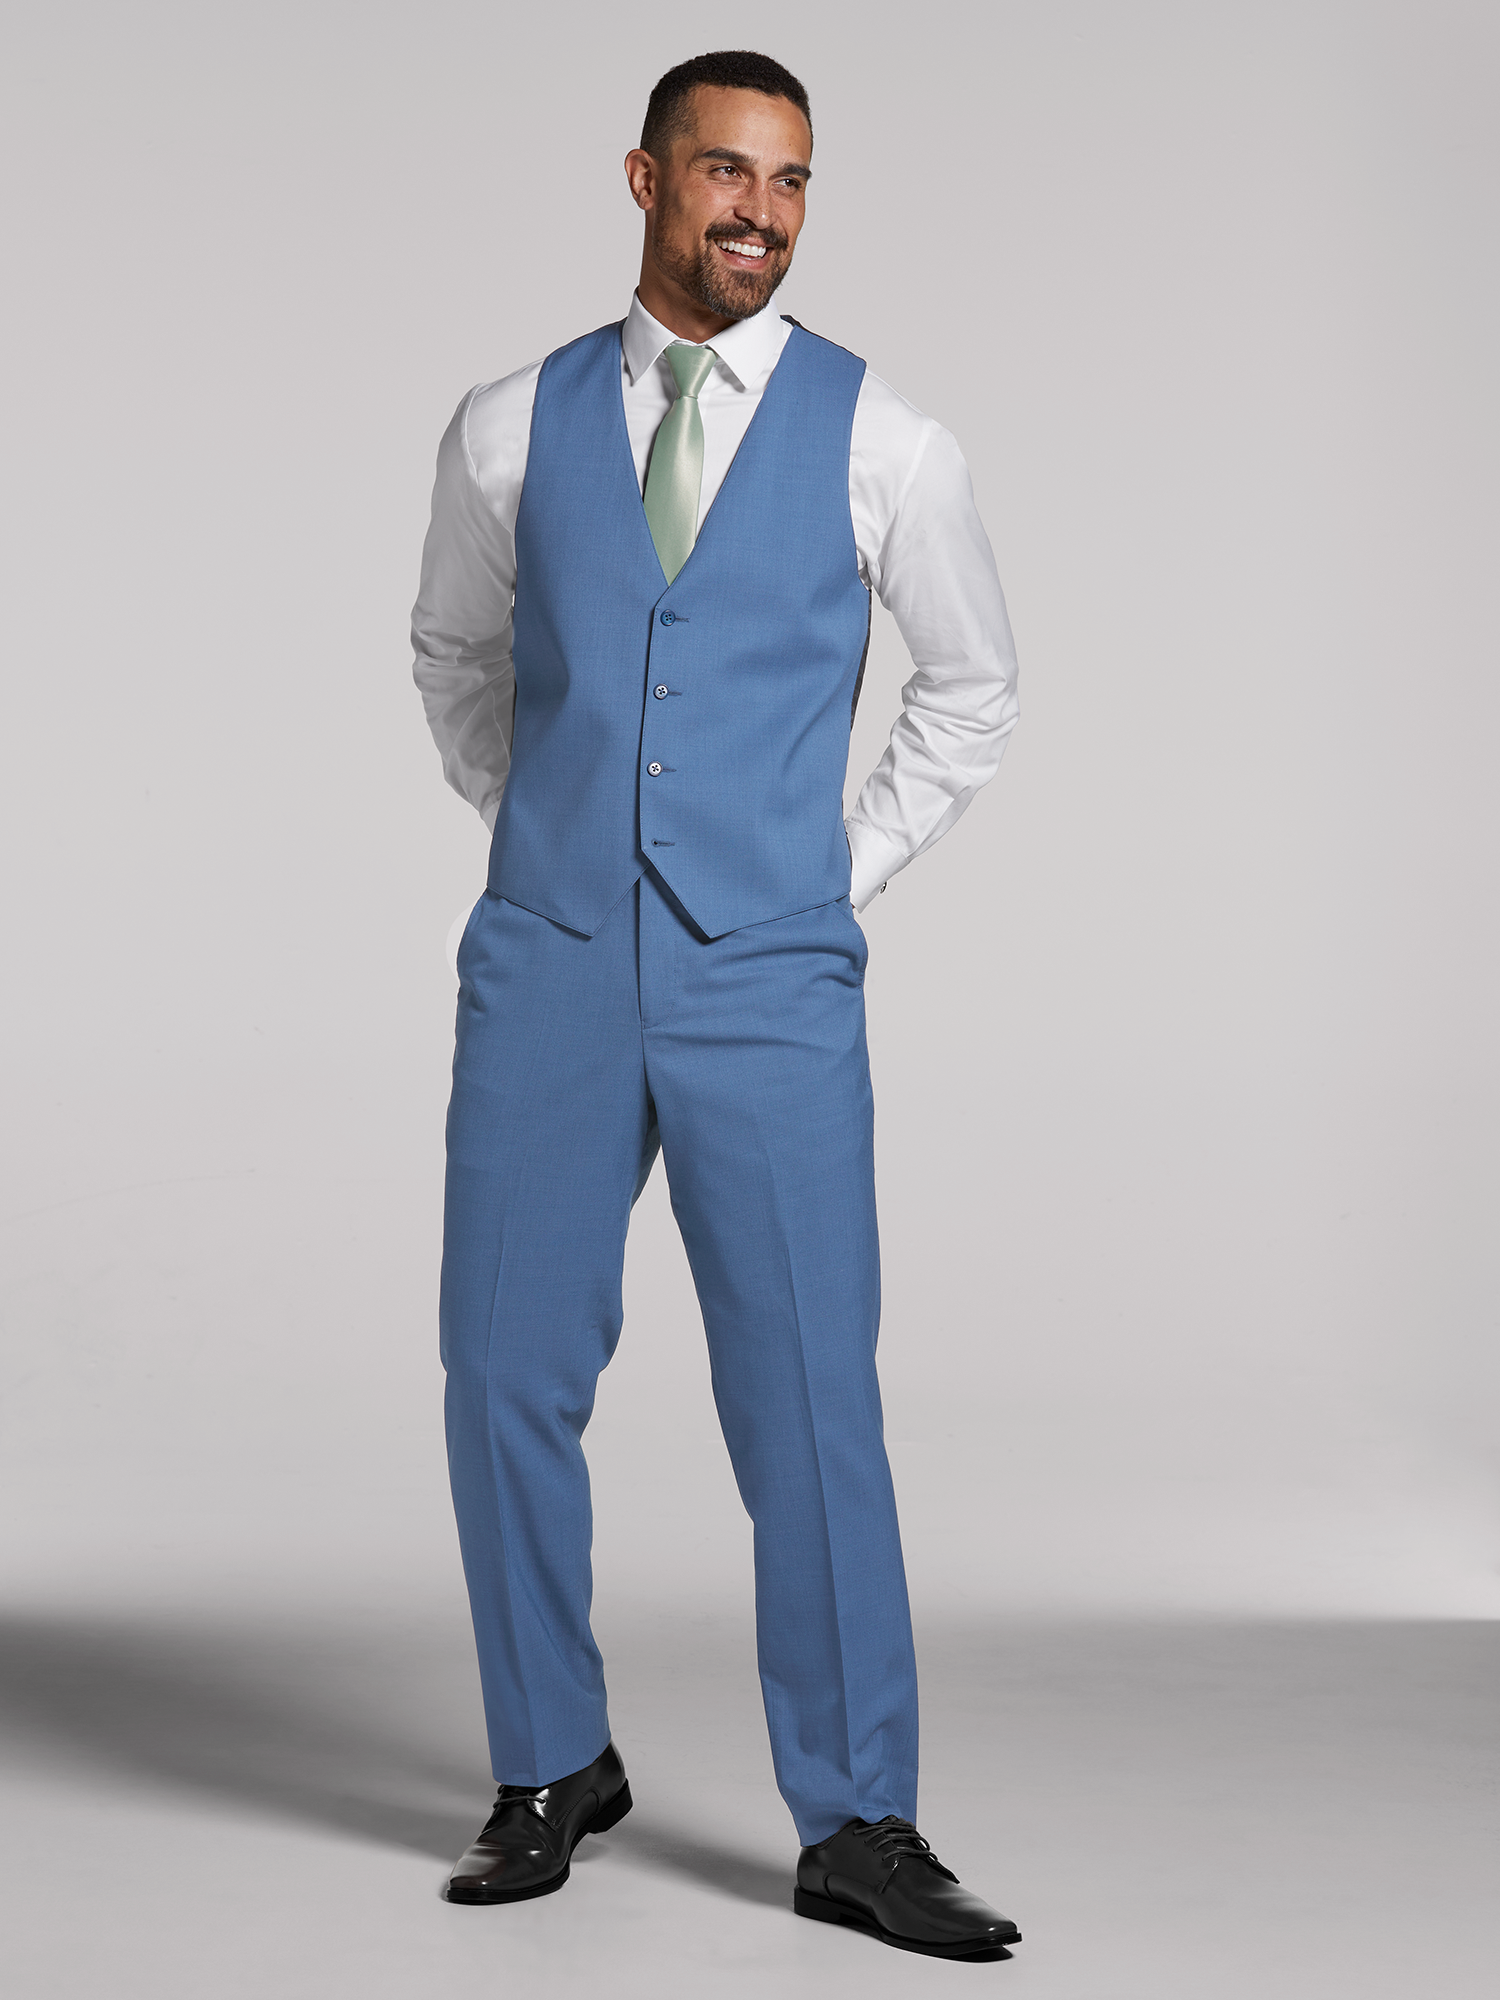 Calvin Klein Boys' 3 Pieces Vest Pants Set Bright Blue 2T 